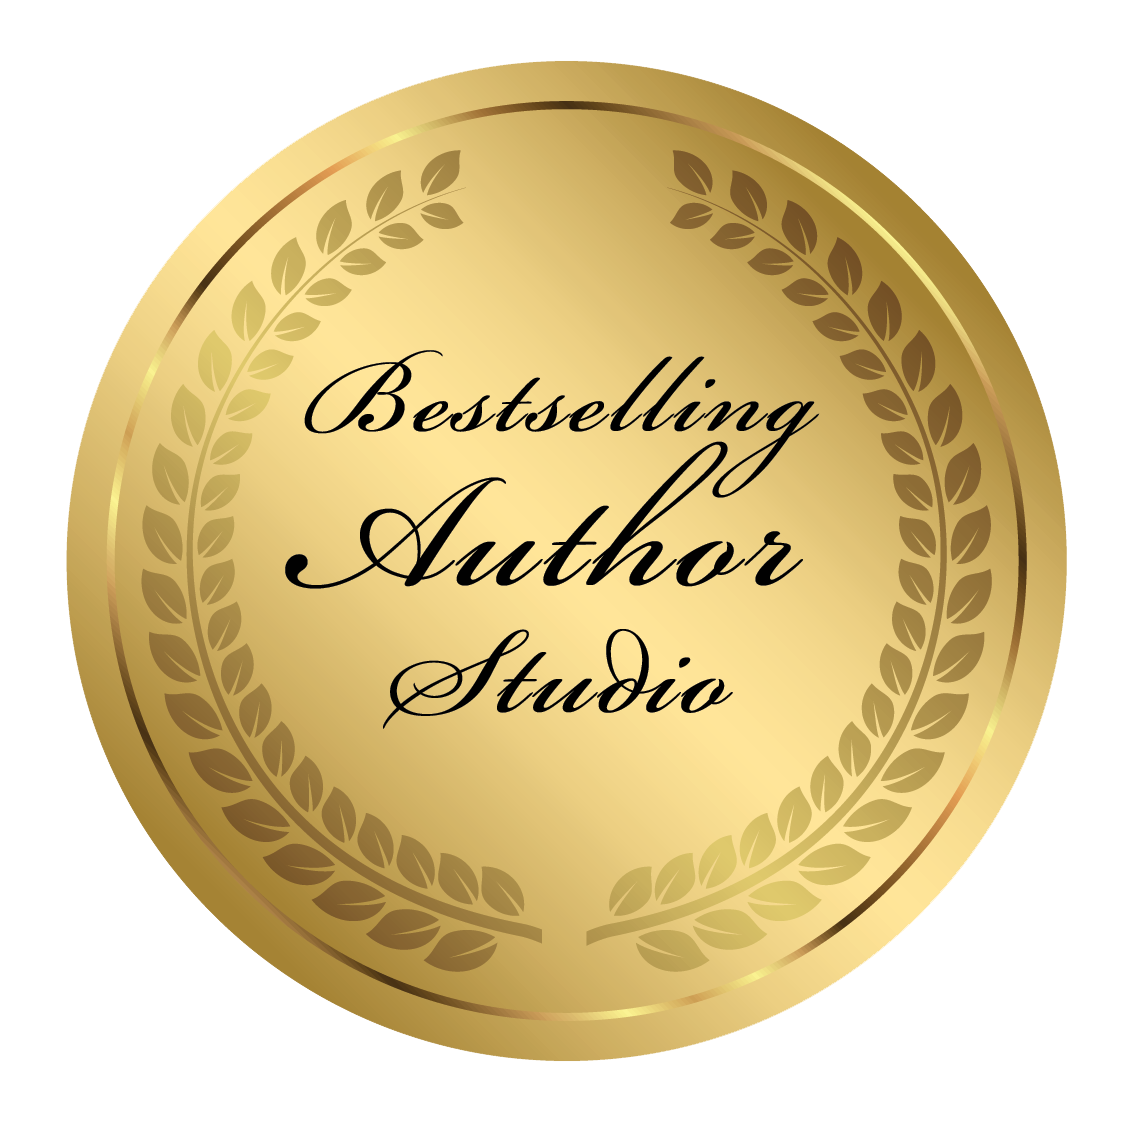 Bestselling Author Studio